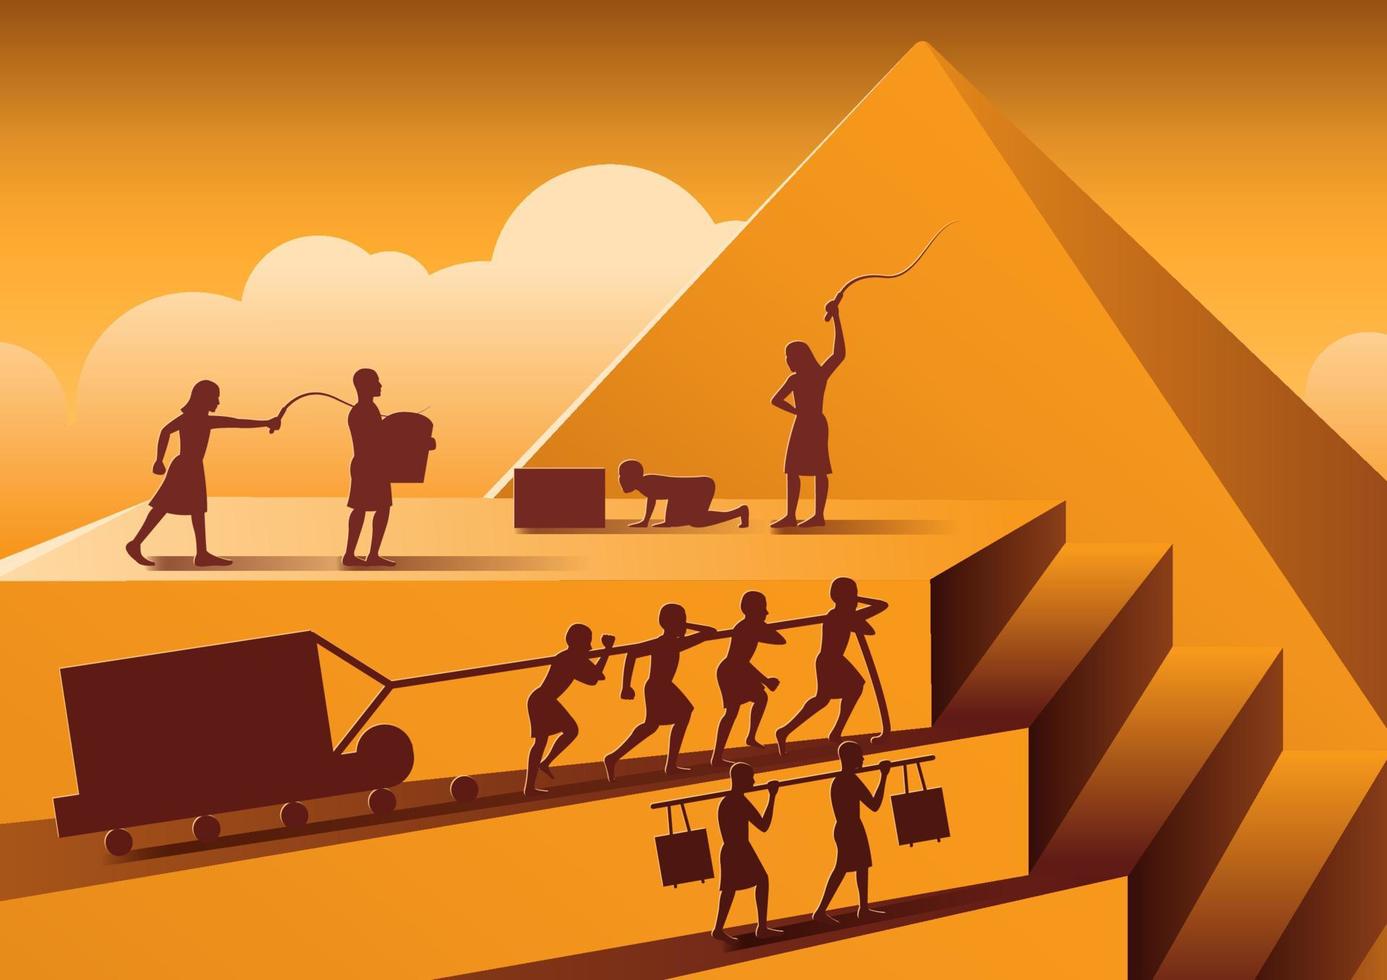 la costruzione della piramide in egitto nell'antichità usava gli uomini come schiavi tutto il giorno con la versione dei cartoni animati vettore